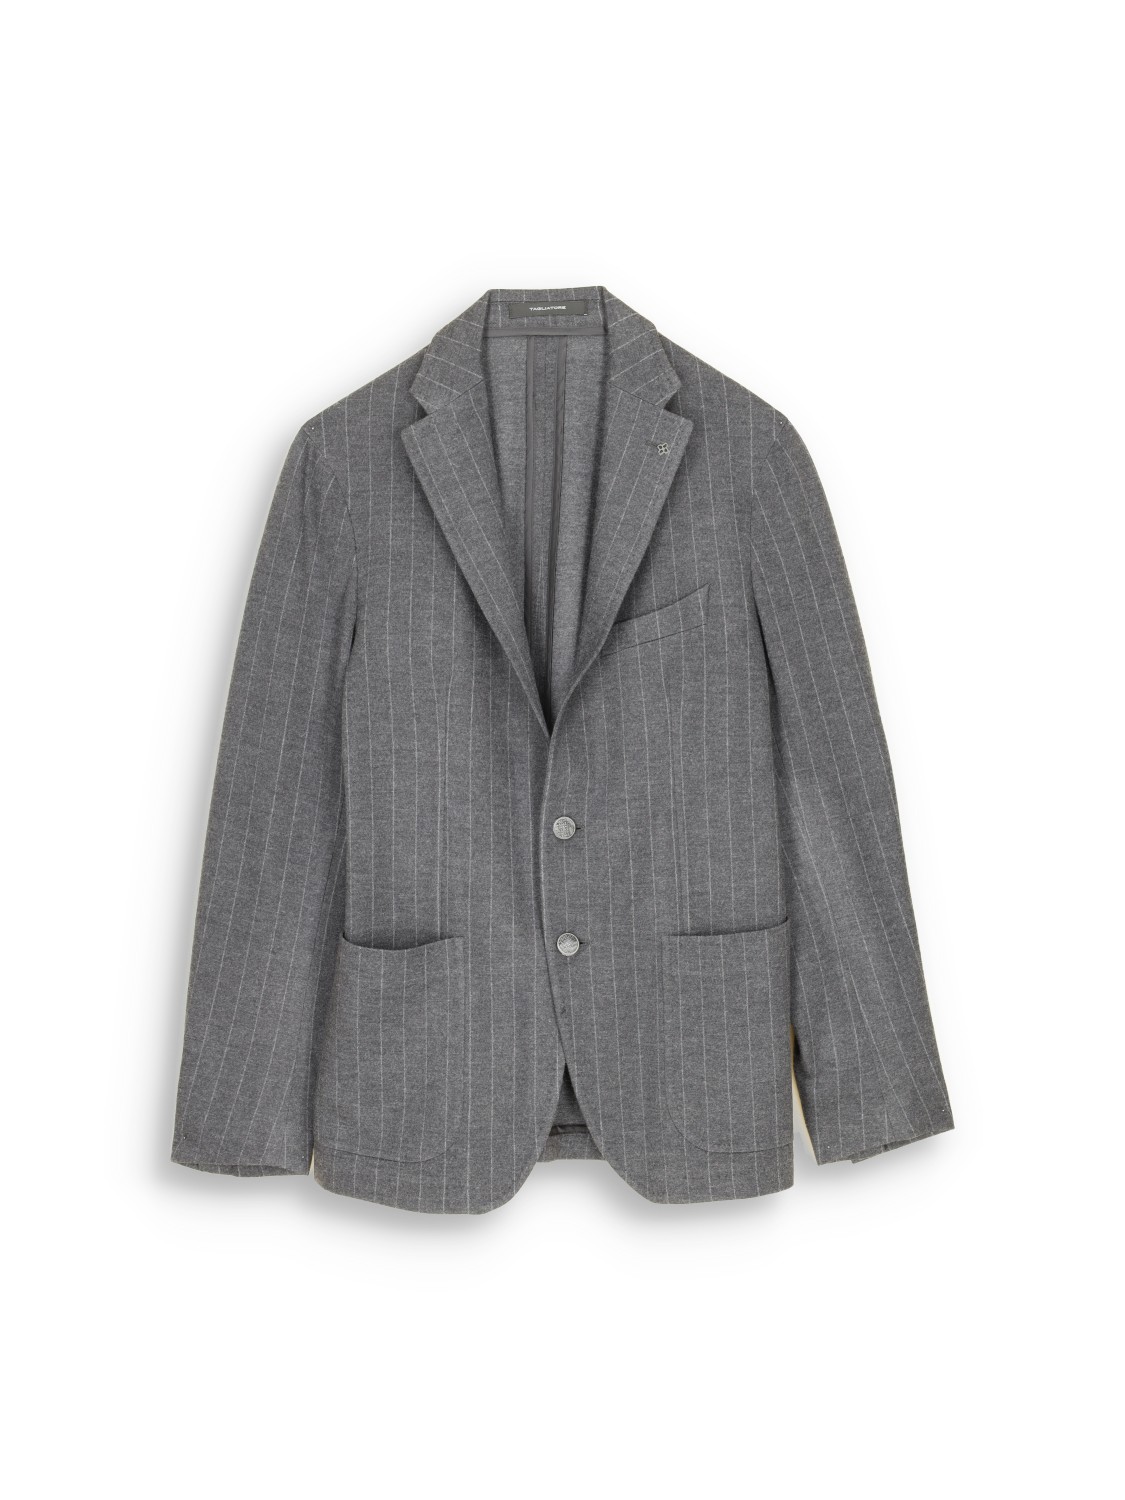 Tagliatore pinstripe suit with pure new wool – Nadelstreifen-Anzug aus Schurwoll-Mix  grau 50